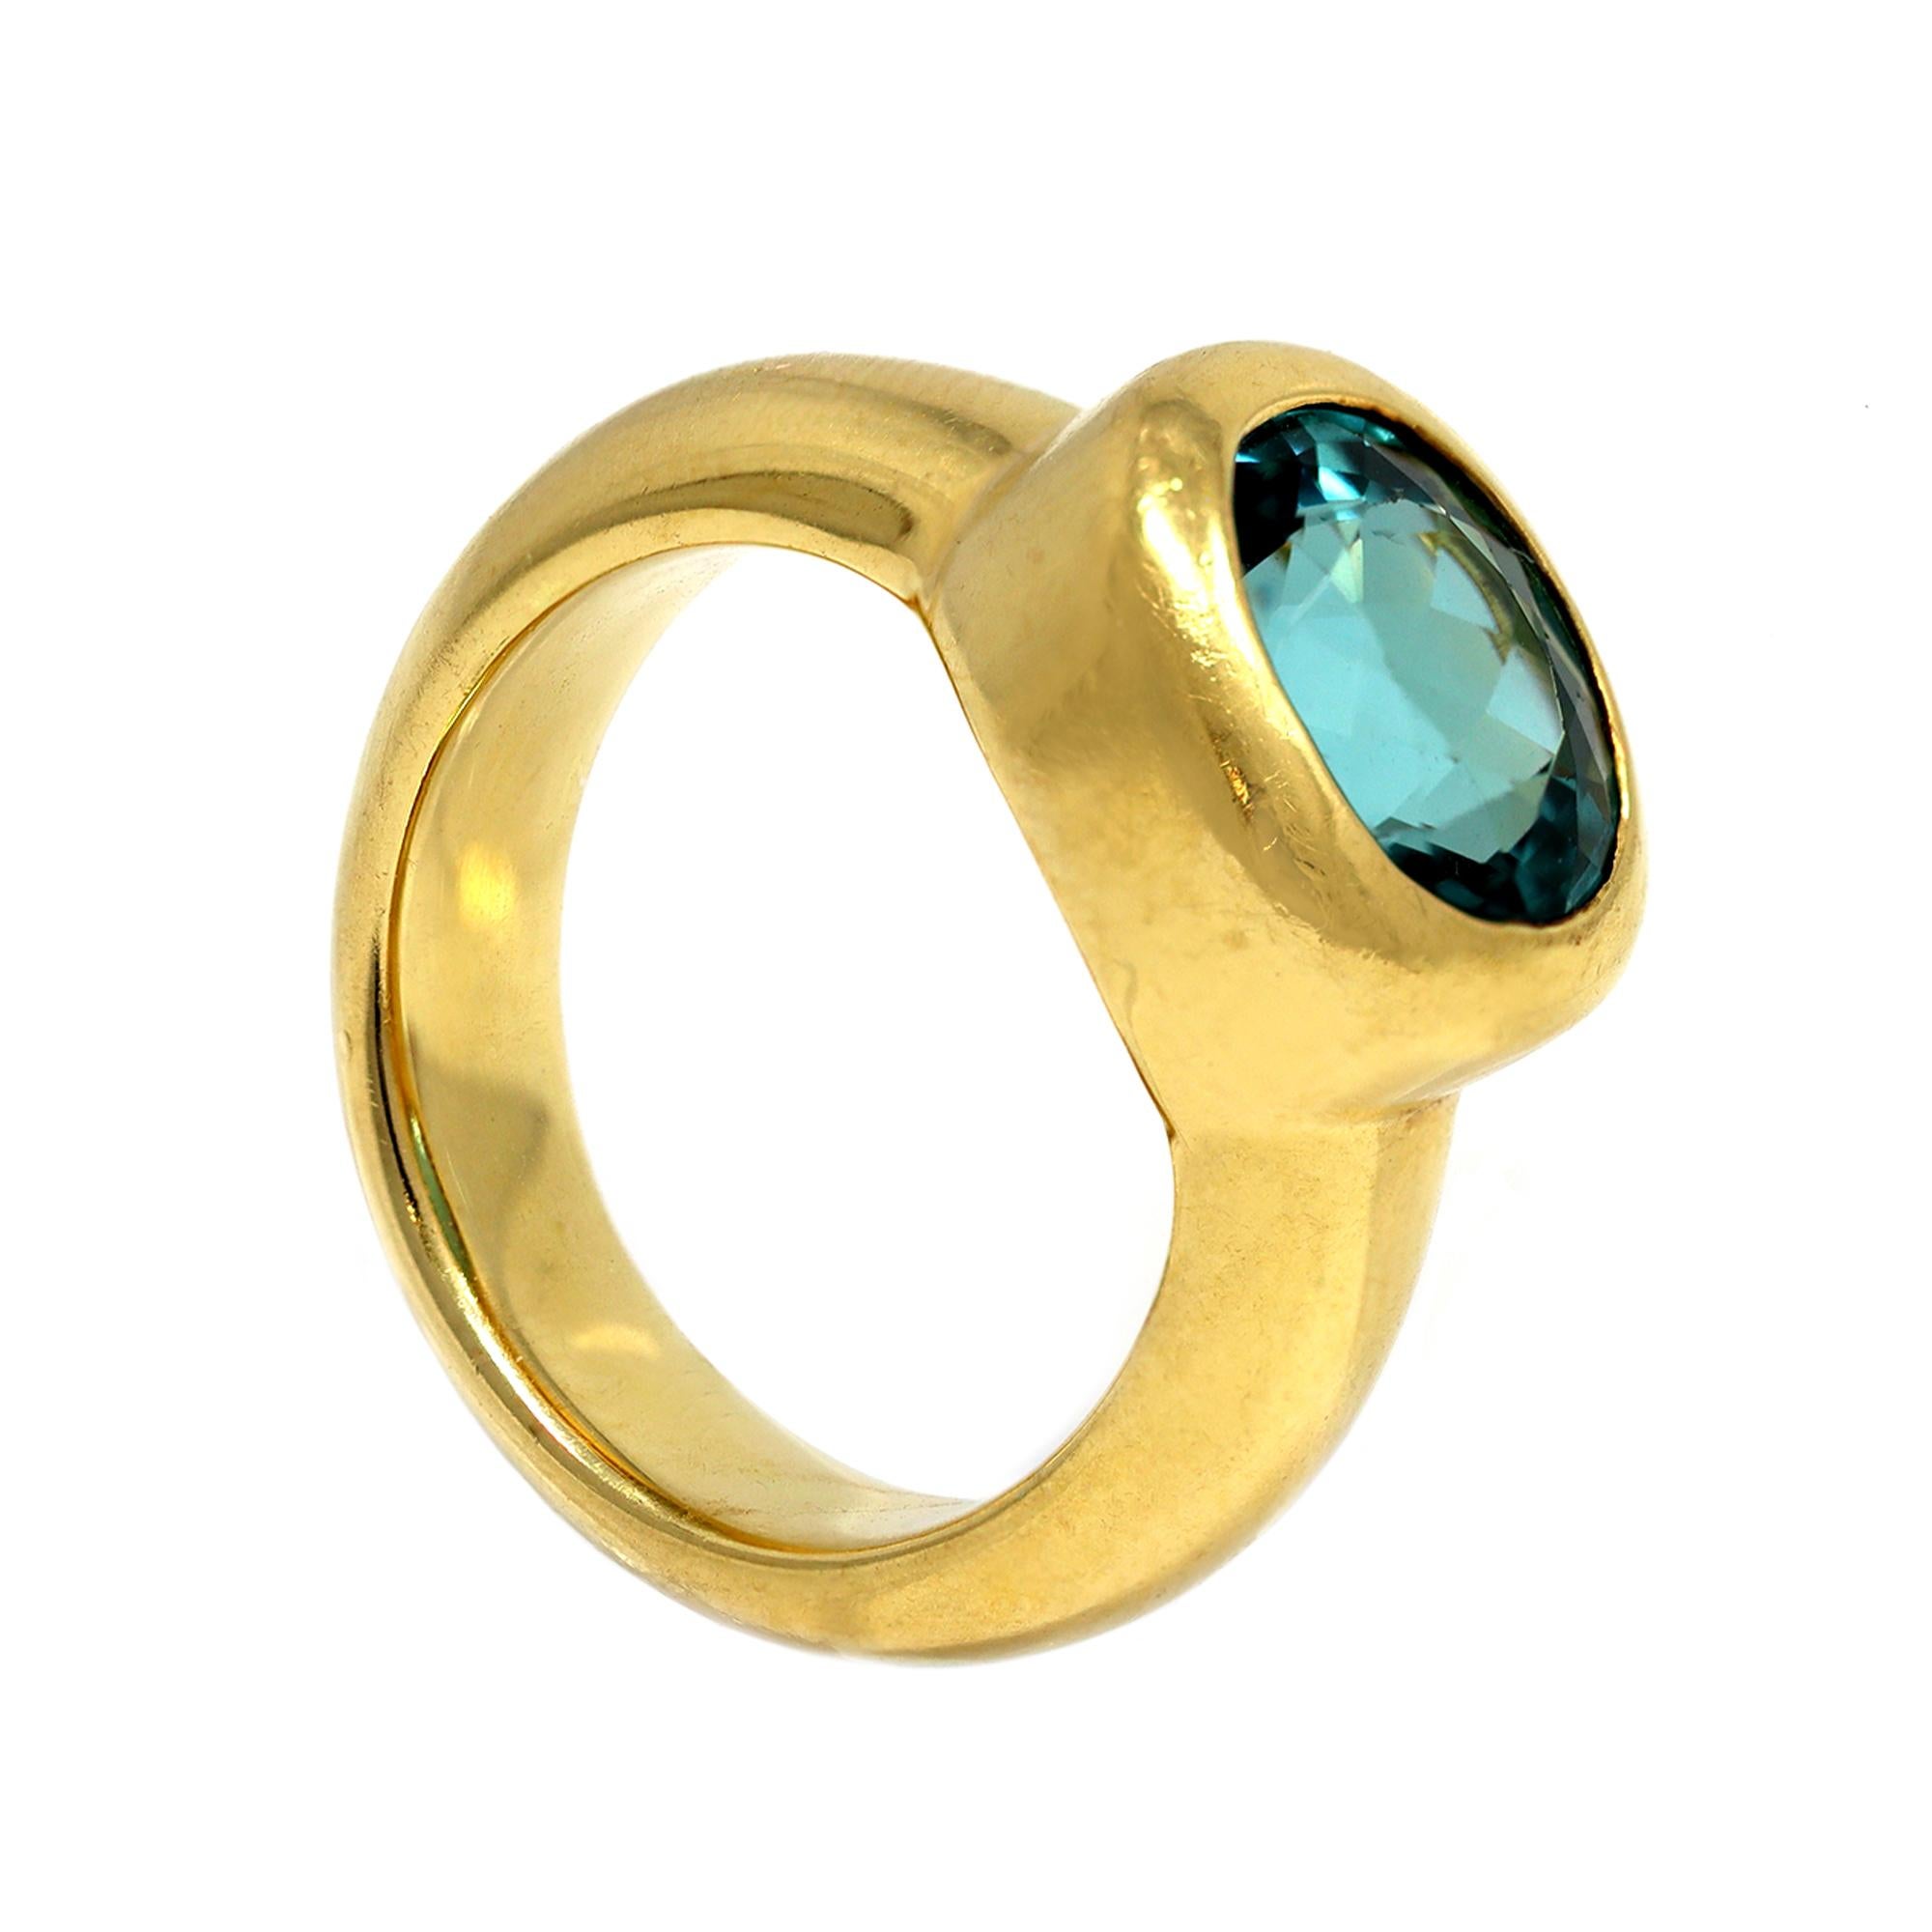 Der ovale, facettierte Turmalin hat eine ungewöhnlich hellblau-grüne Farbe und eine sehr saubere Kristallqualität. Der Stein ist in eine schwere Lünette und ein größeres Band aus 18 Karat Gelbgold gefasst. Der handgefertigte Ring ist 0,43